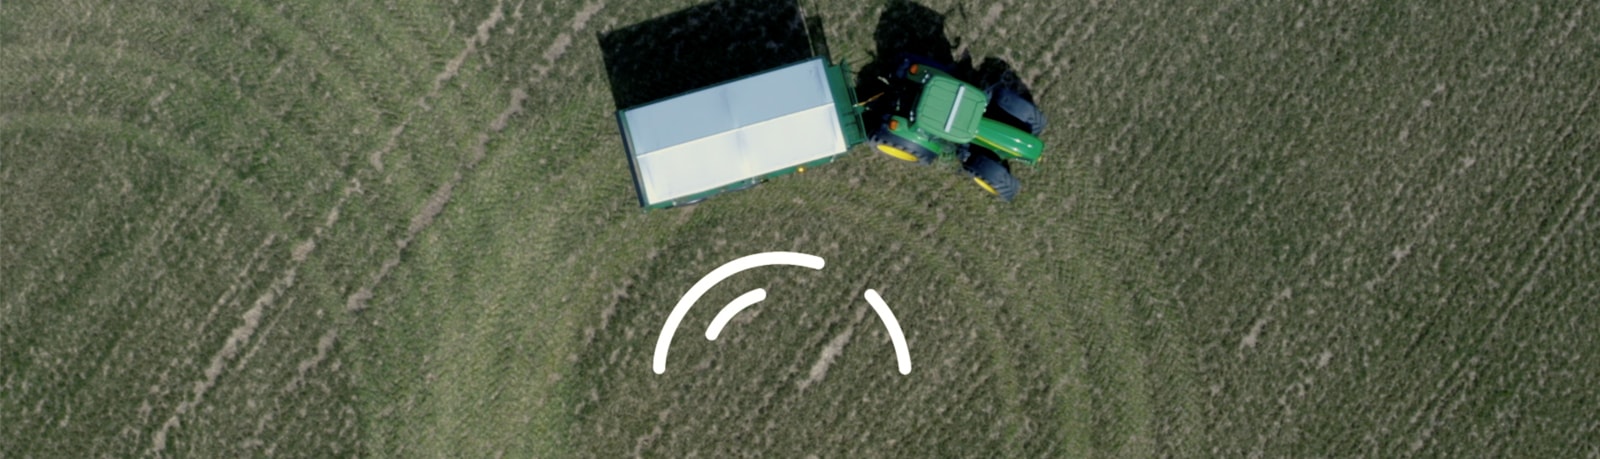 Traktor på jordet med logo